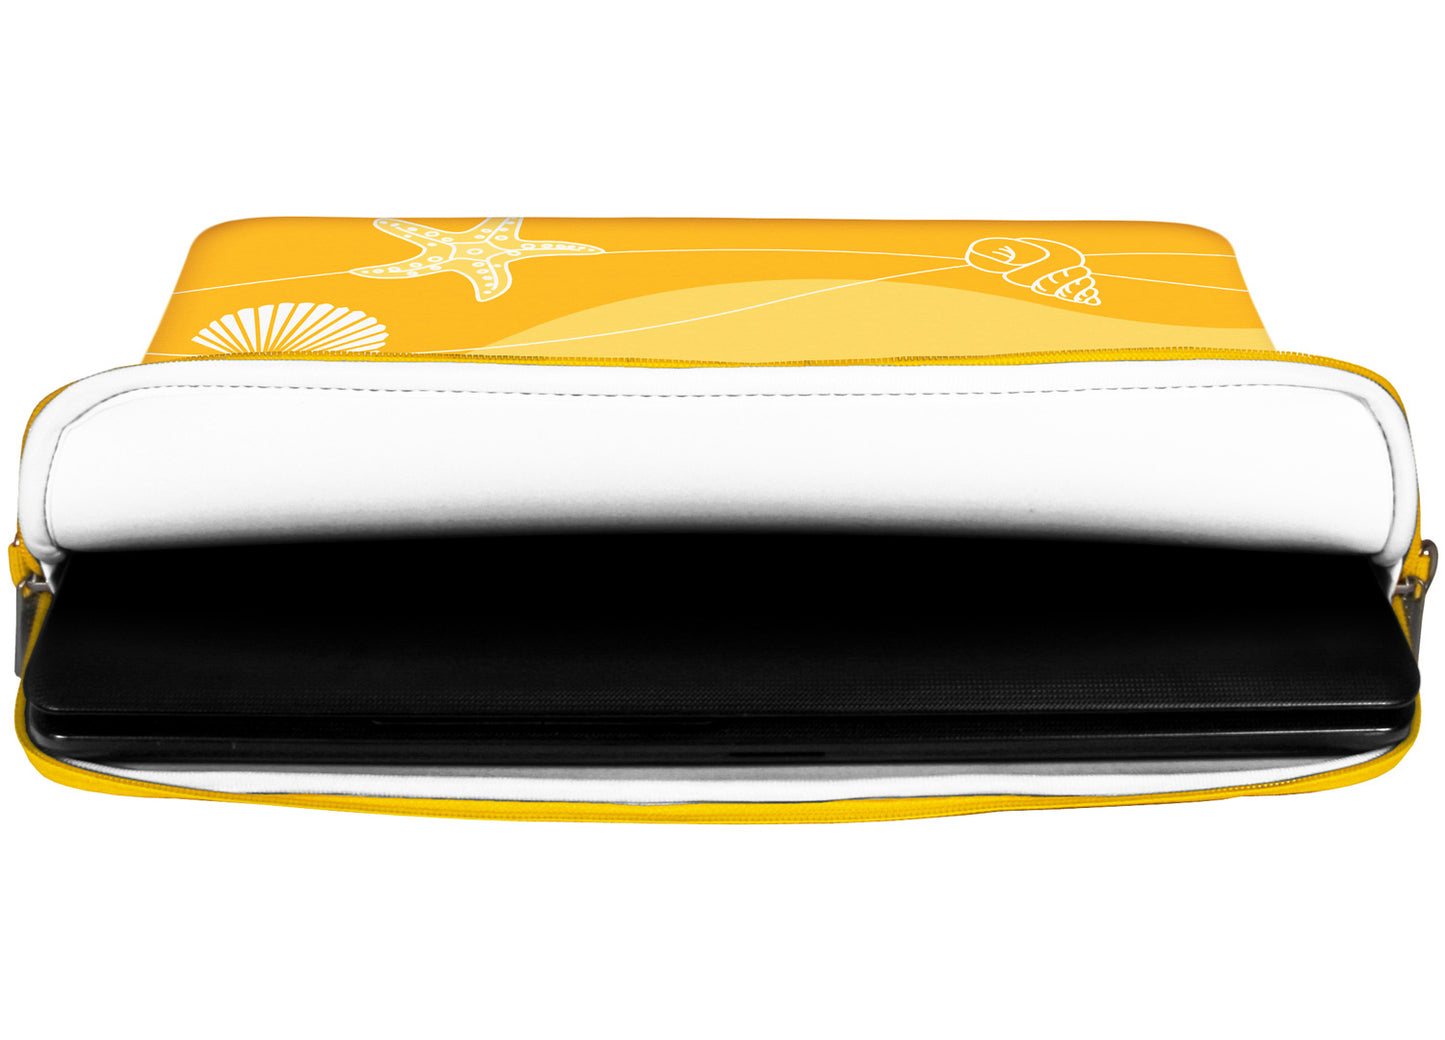 Innenansicht mit Schutzlippen der LS149 Summer Beach Designer Laptop Tasche in weiß aus wasserabweisendem Neopren